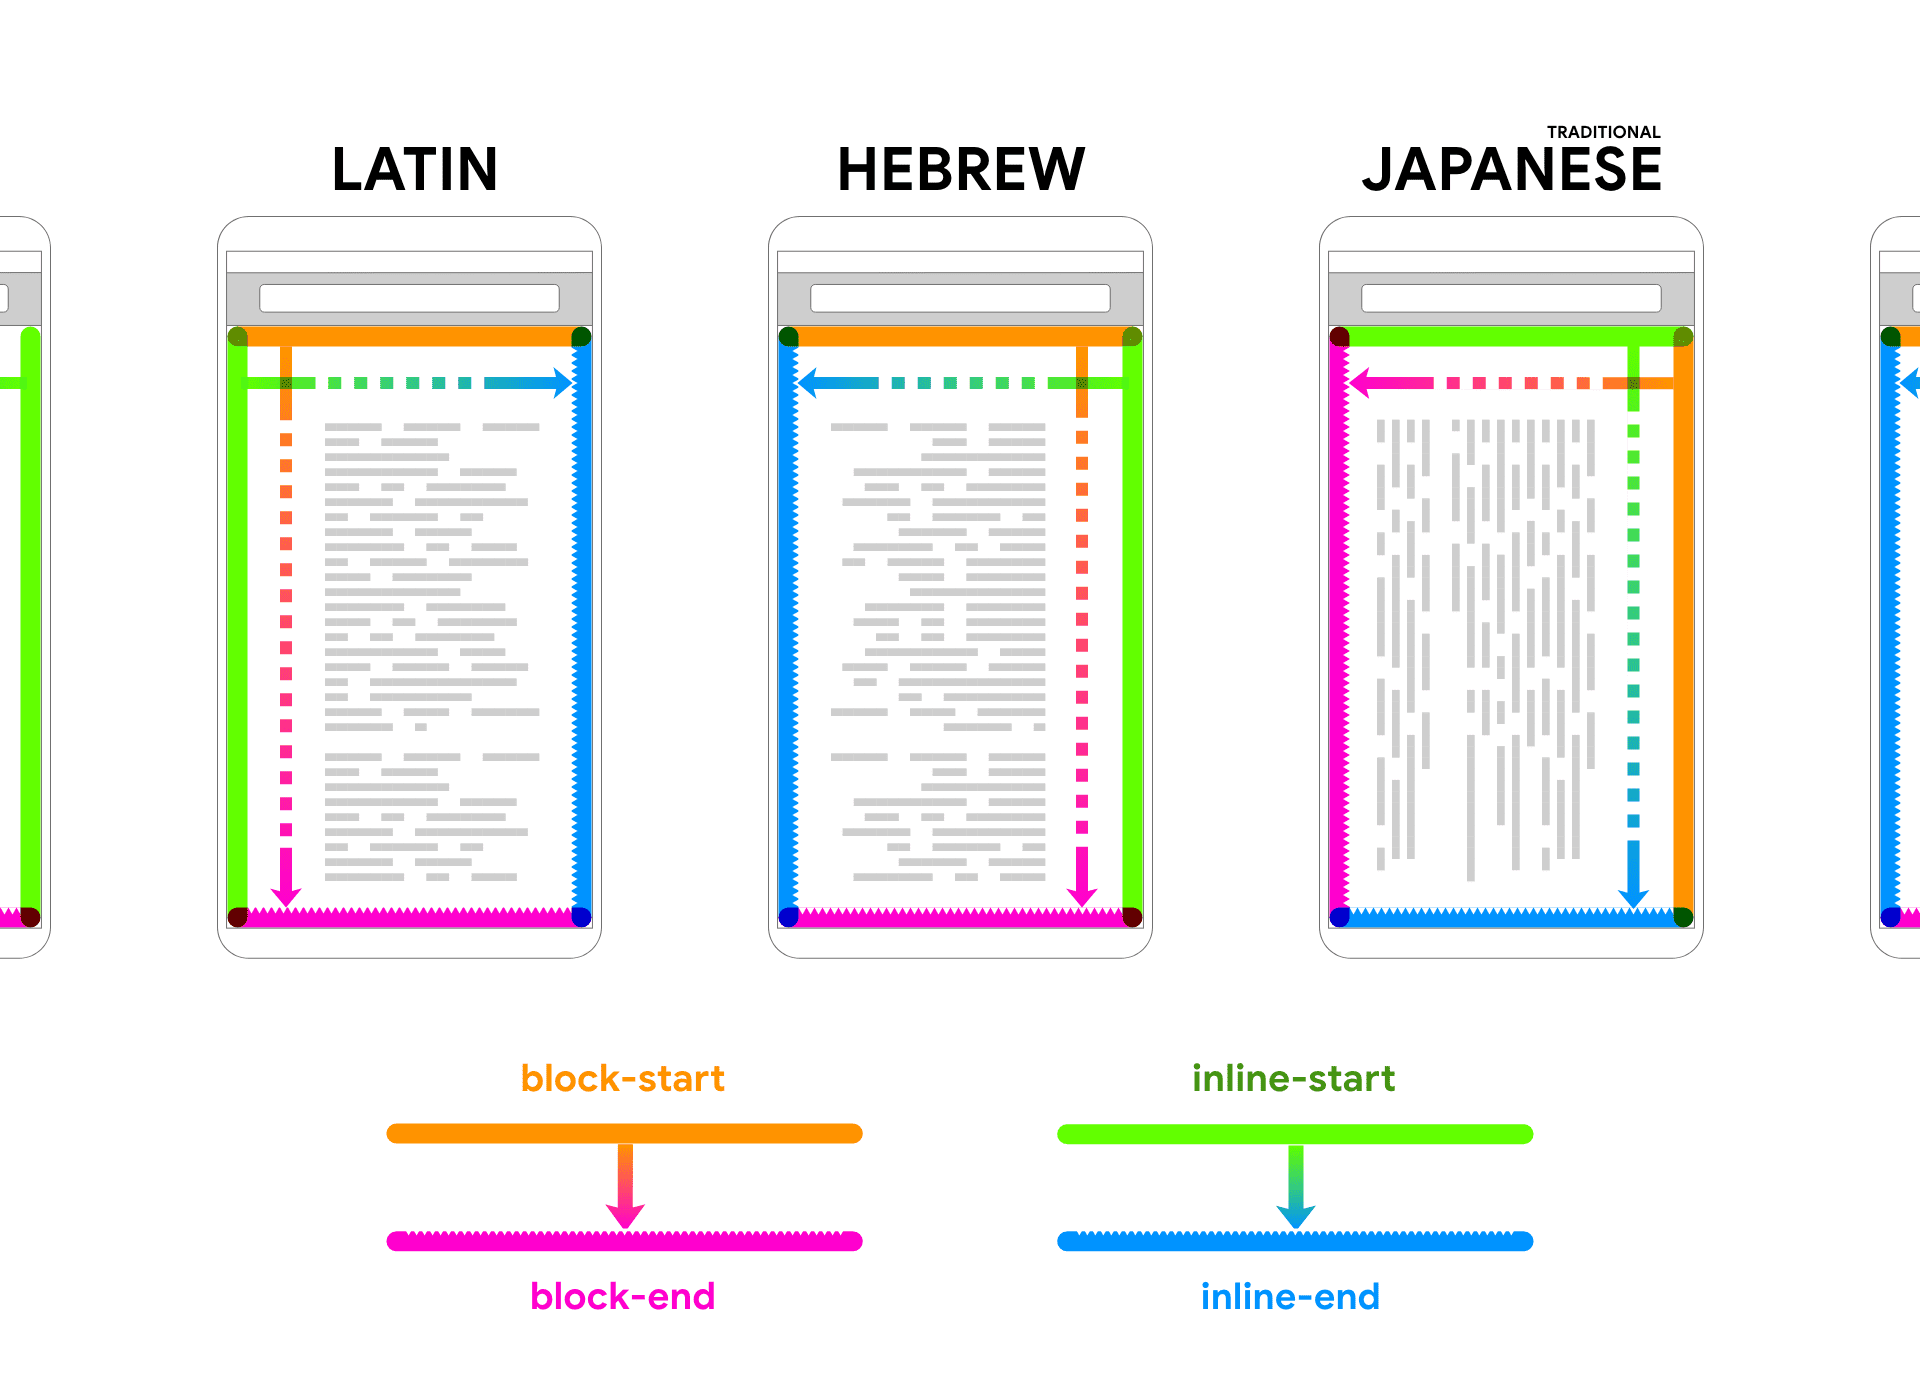 בשפות לטיניות, עברית ויפנית מוצגות רינדור של טקסט placeholder בתוך מסגרת של מכשיר. חיצים וצבעים עוקבים אחרי הטקסט כדי לעזור לקשר בין שני כיוונים של בלוק ו בתוך שורה.